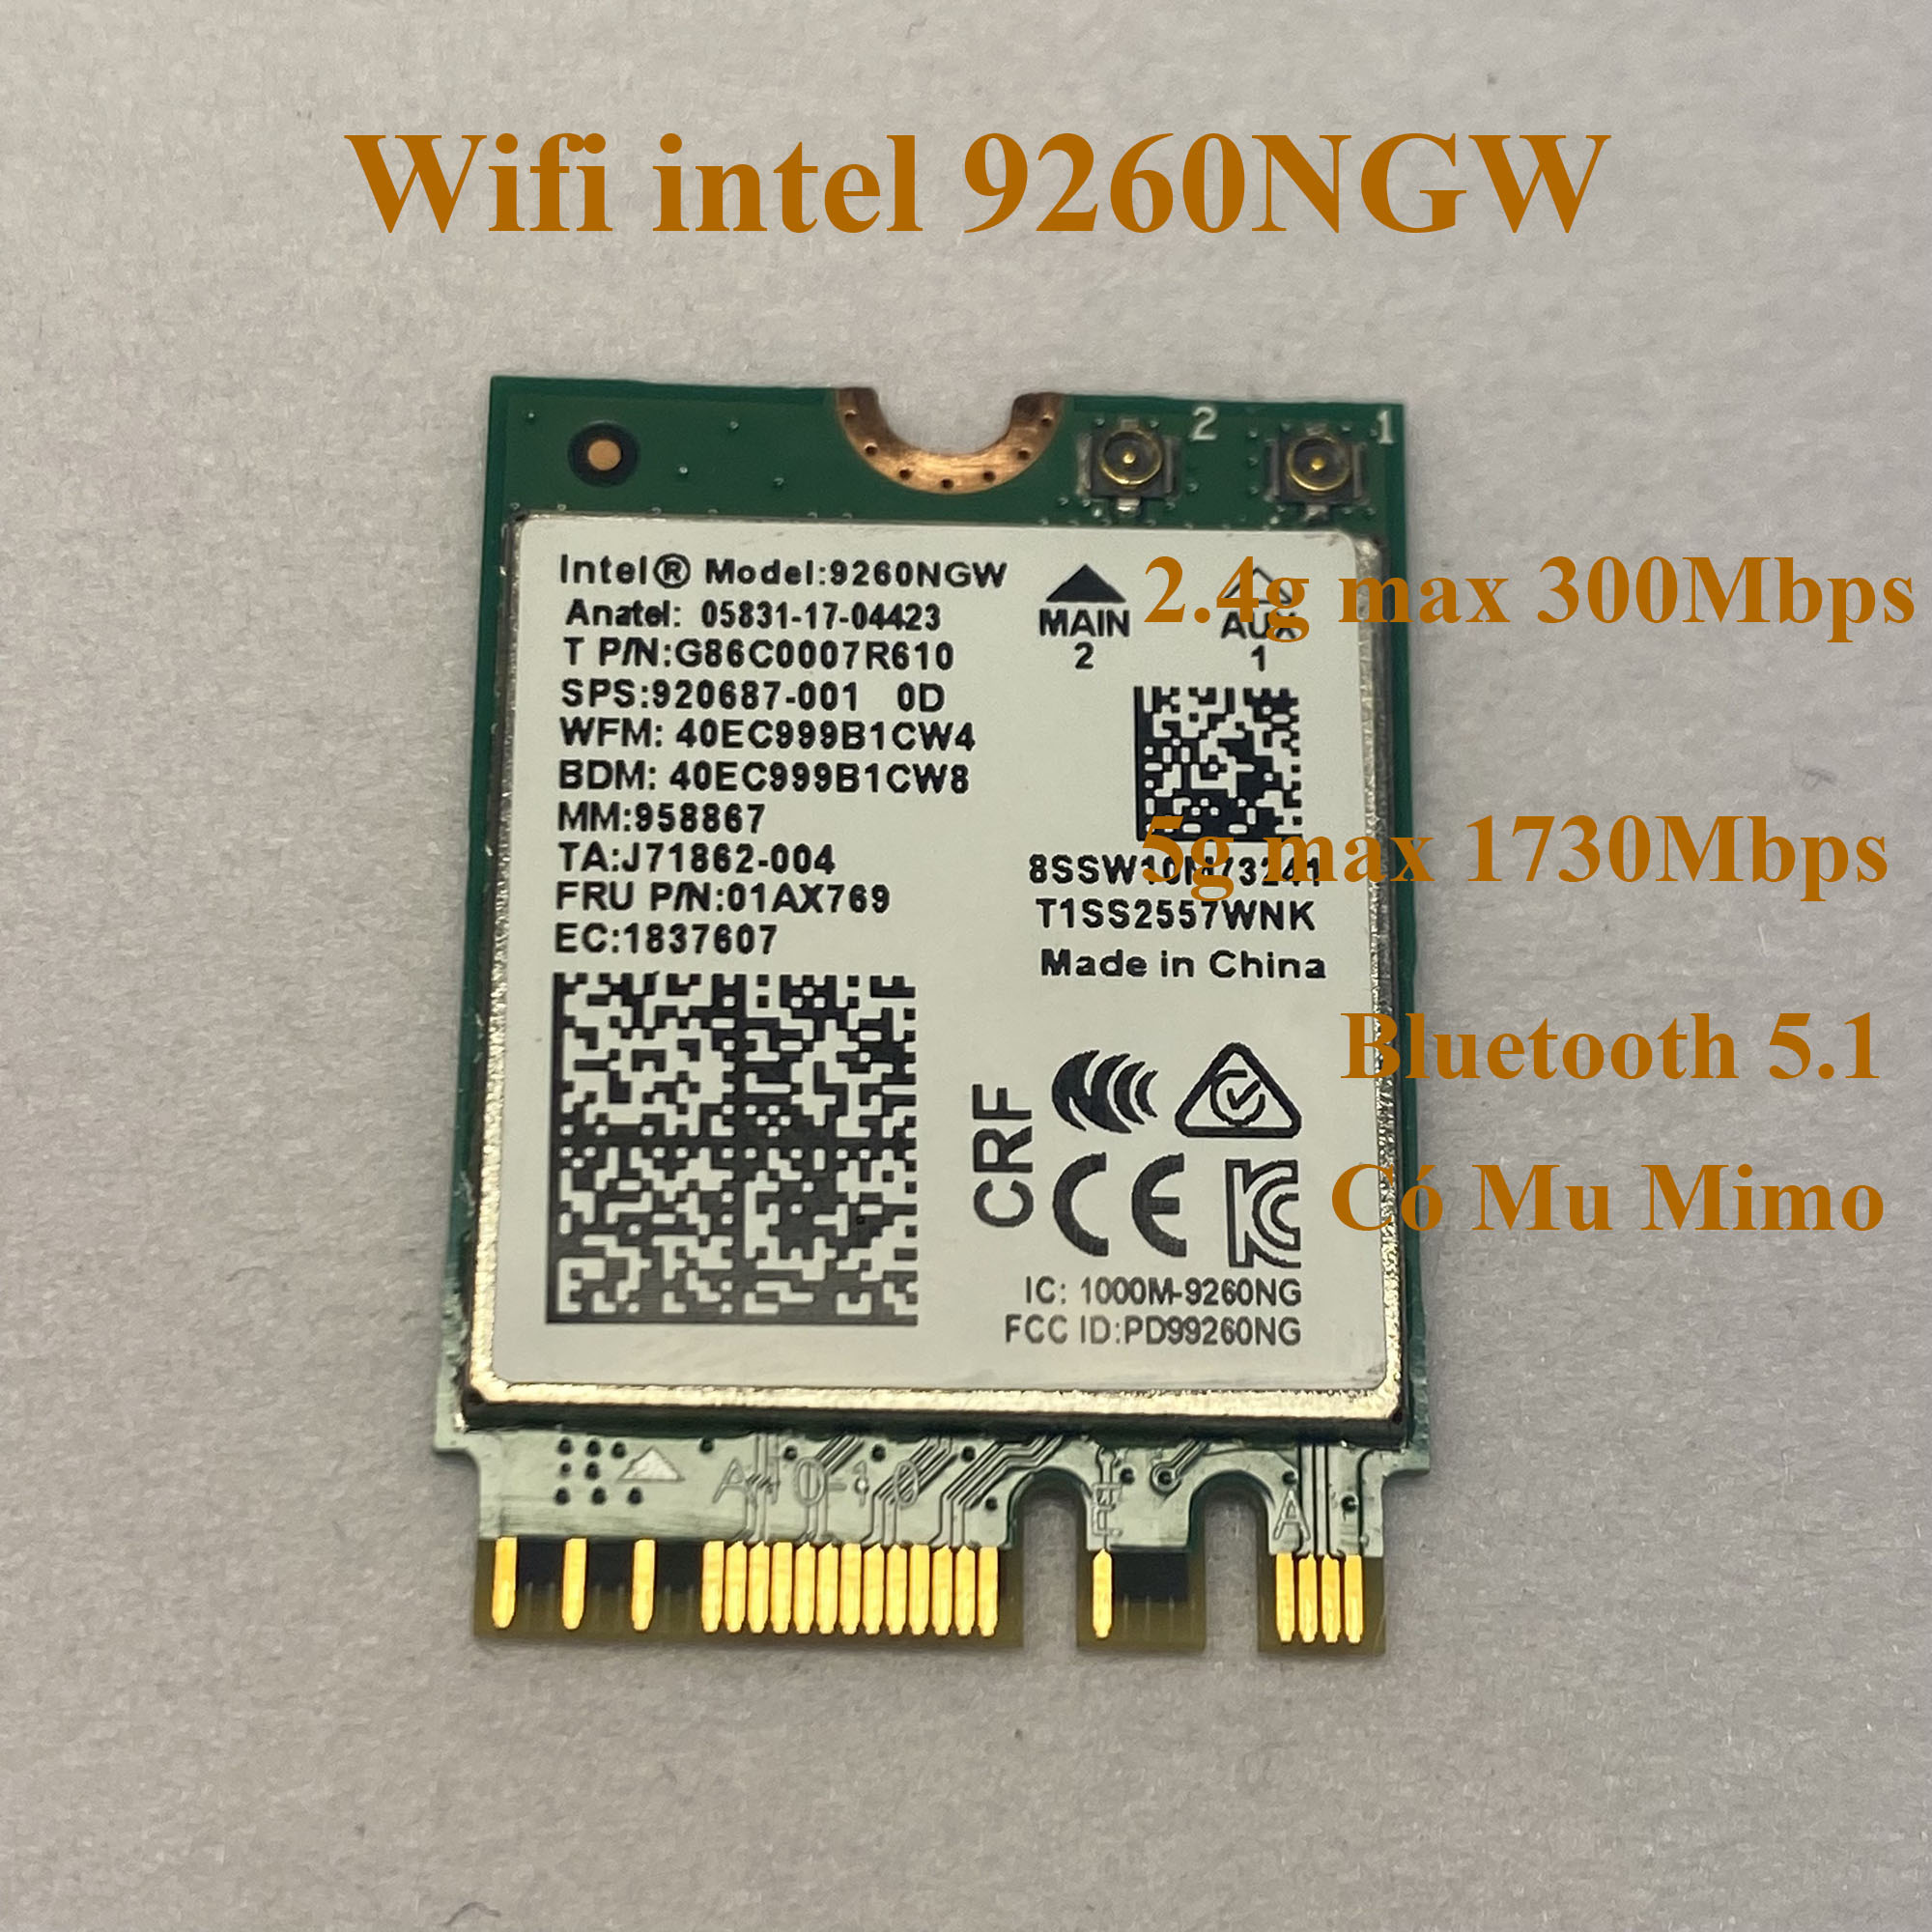 card Mạng Wifi intel 9260ngw AC 2.4g và 5g Kèm Bluetooth 5.1 có đa luồng Mu Mimo dành cho Laptop Dell, HP, Asus...